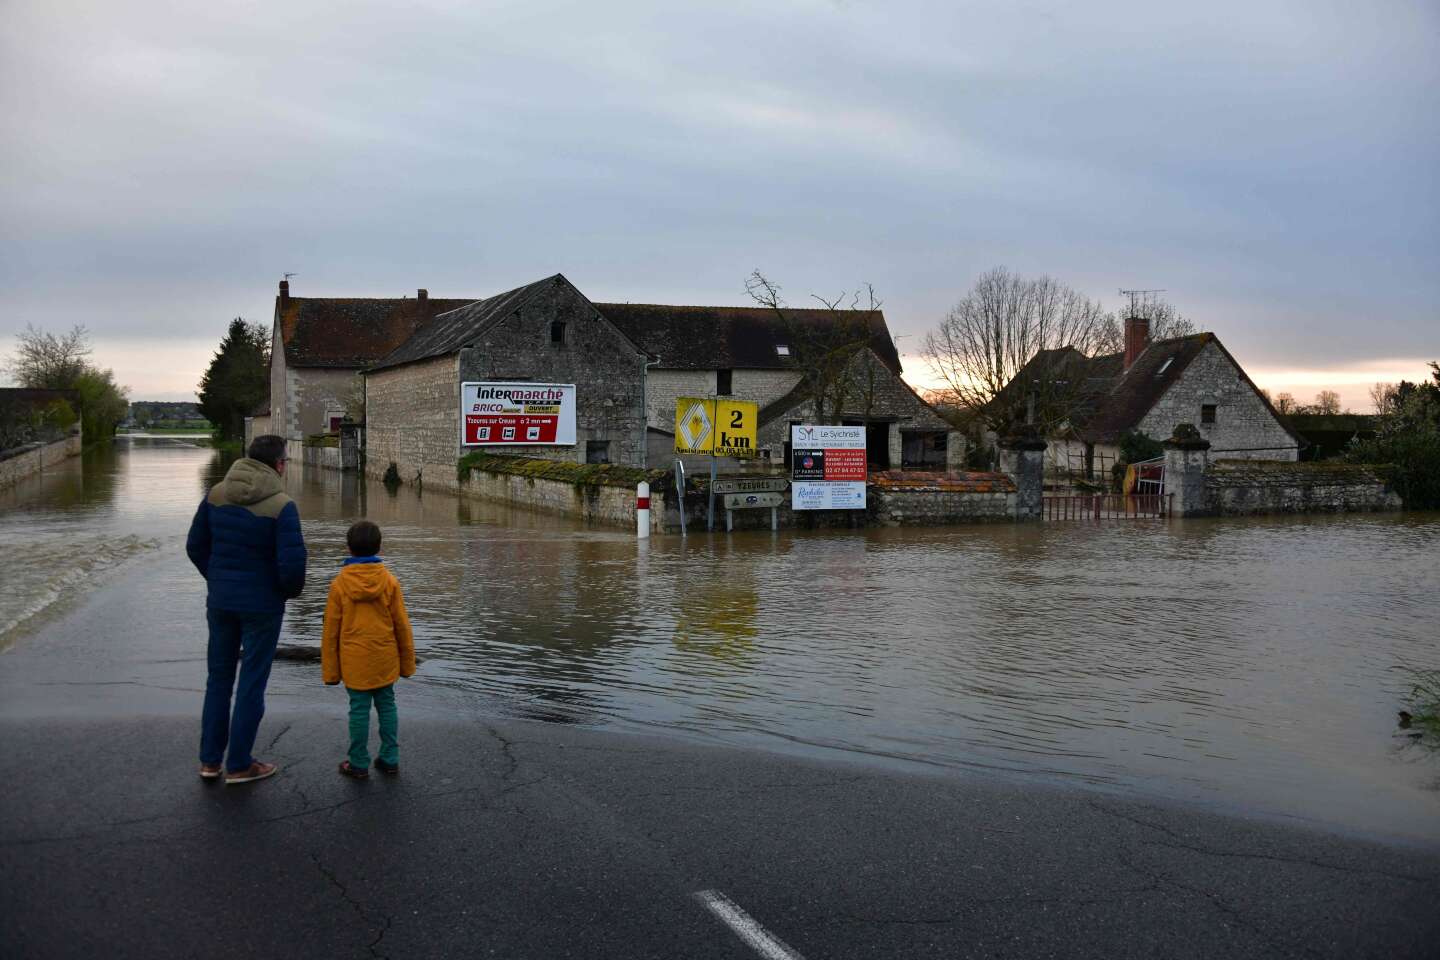 Risque d’inondations : les départements de la Côte-d’Or et de l’Yonne en alerte rouge, l’Indre-et-Loire repasse en orange